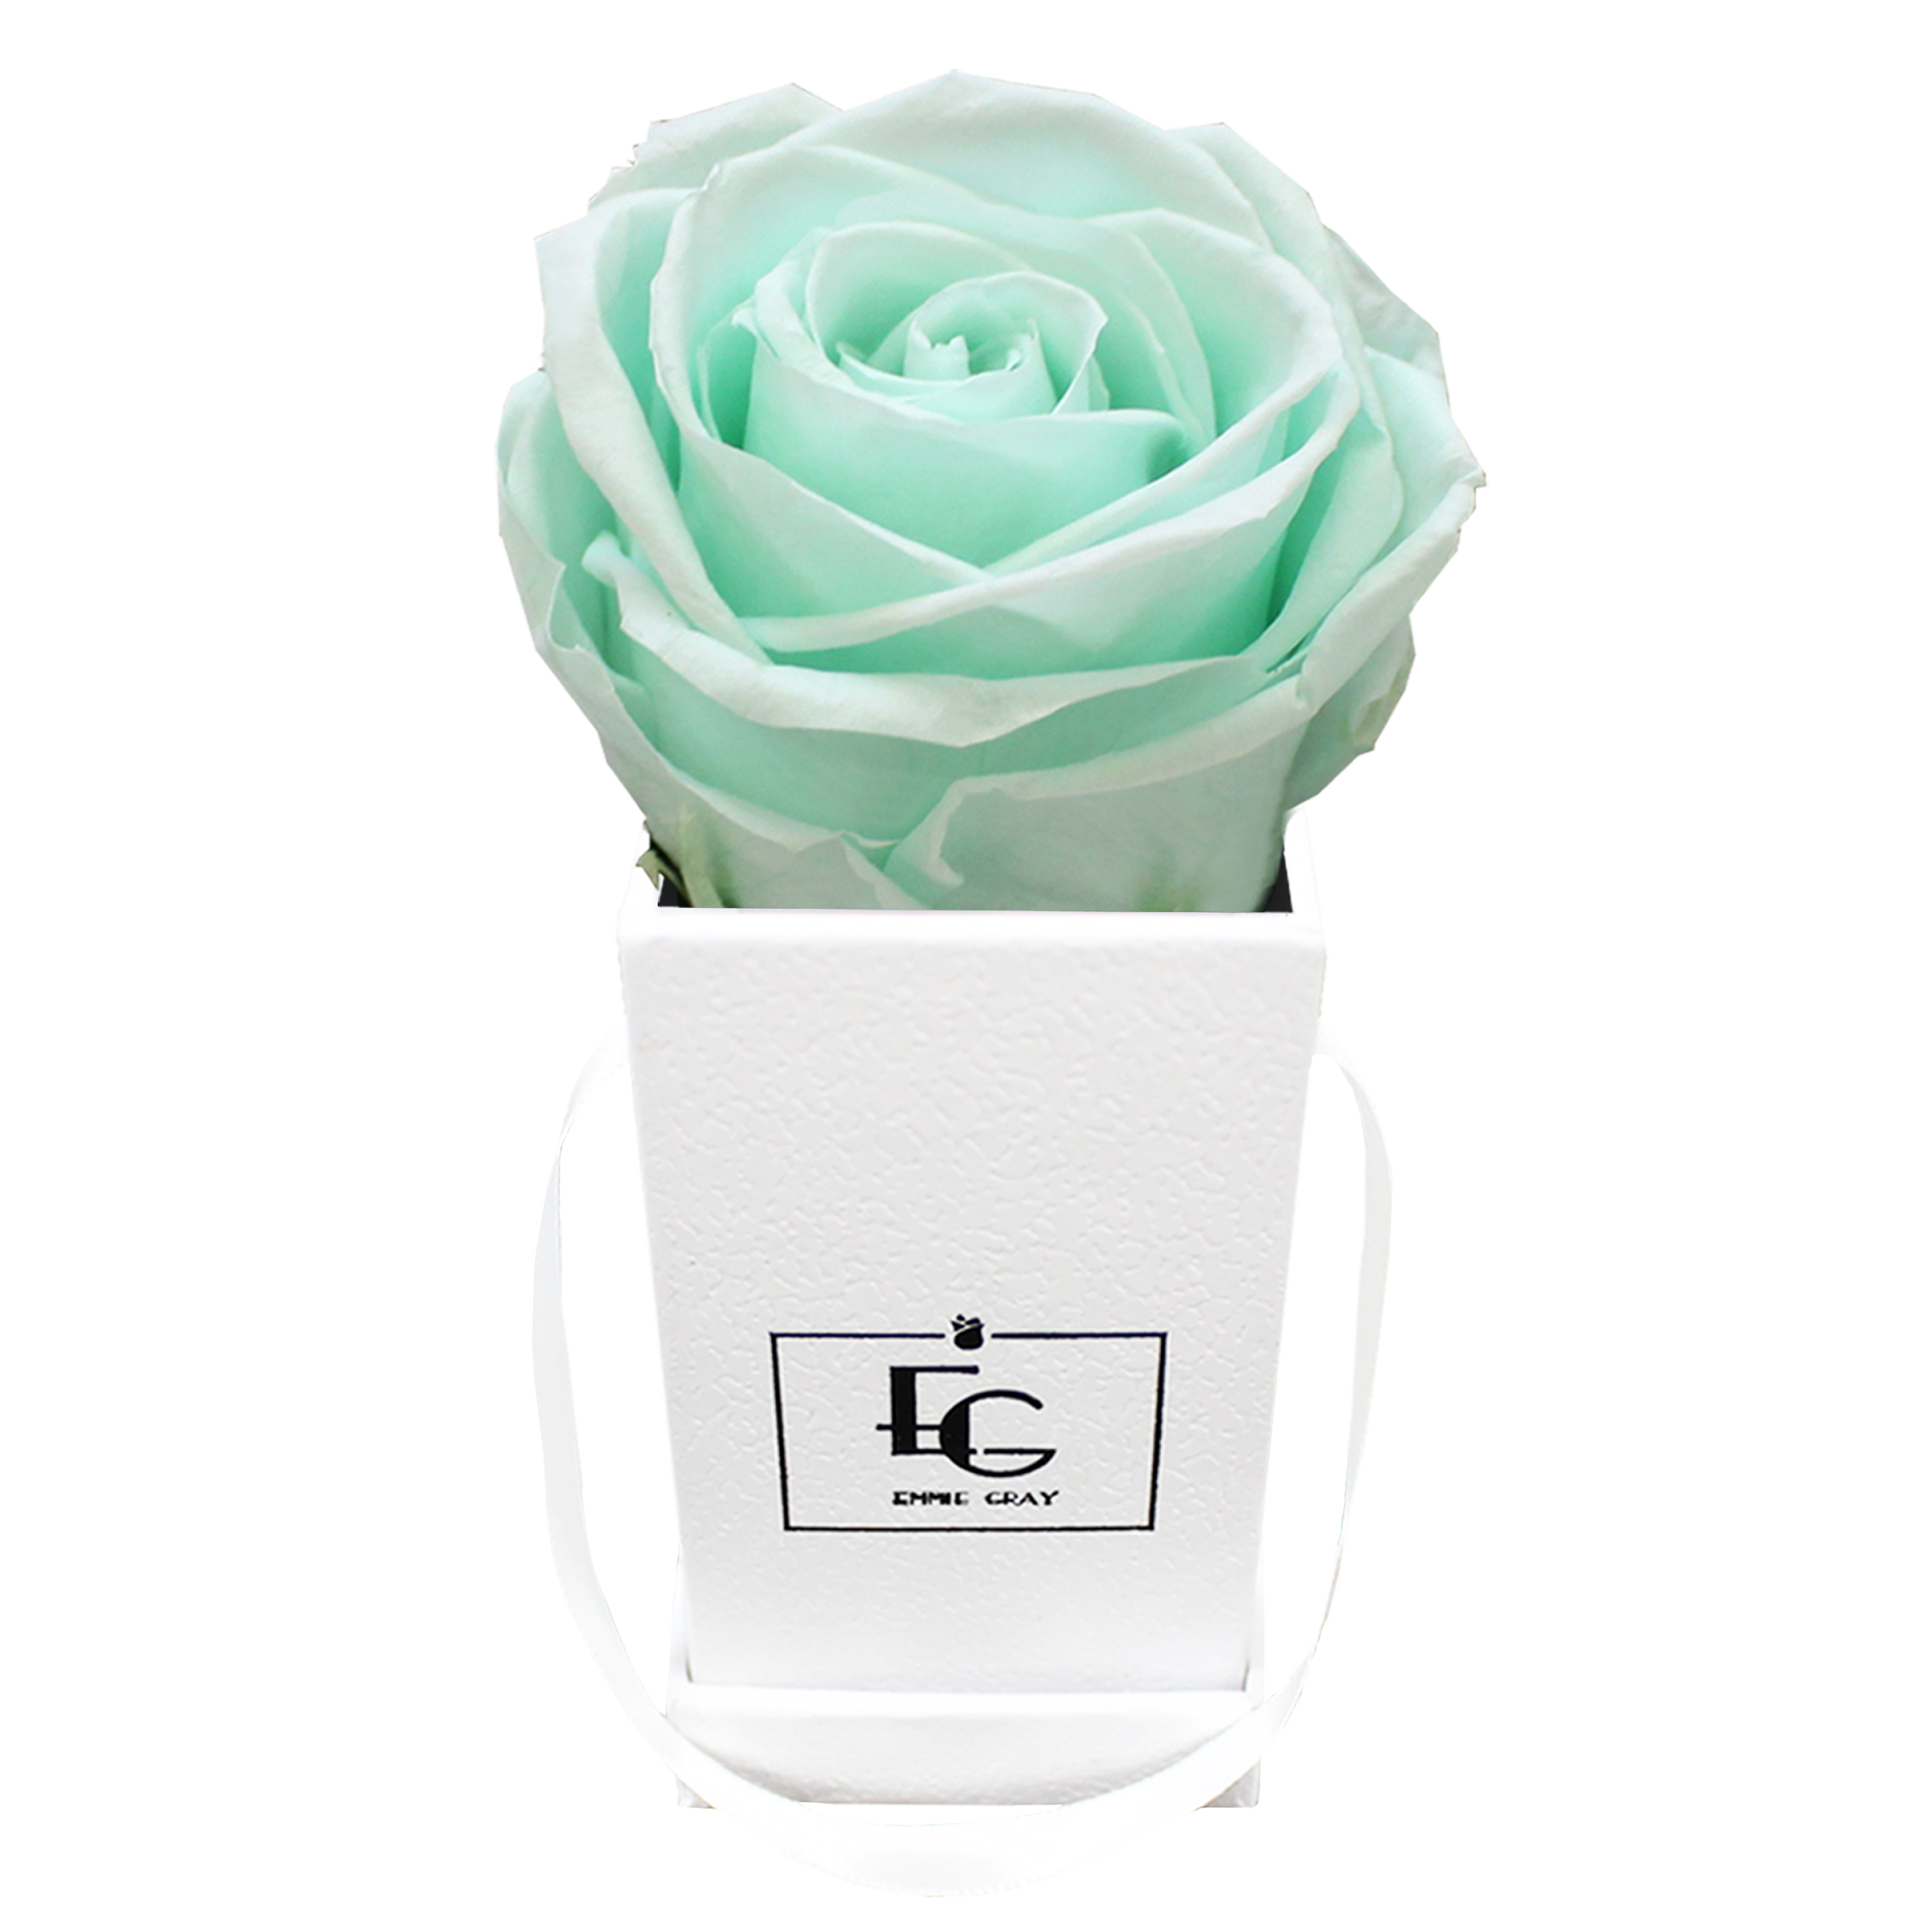 GRAY Rosen EMMIE Infinity mit eckige Flowerbox | Weiße